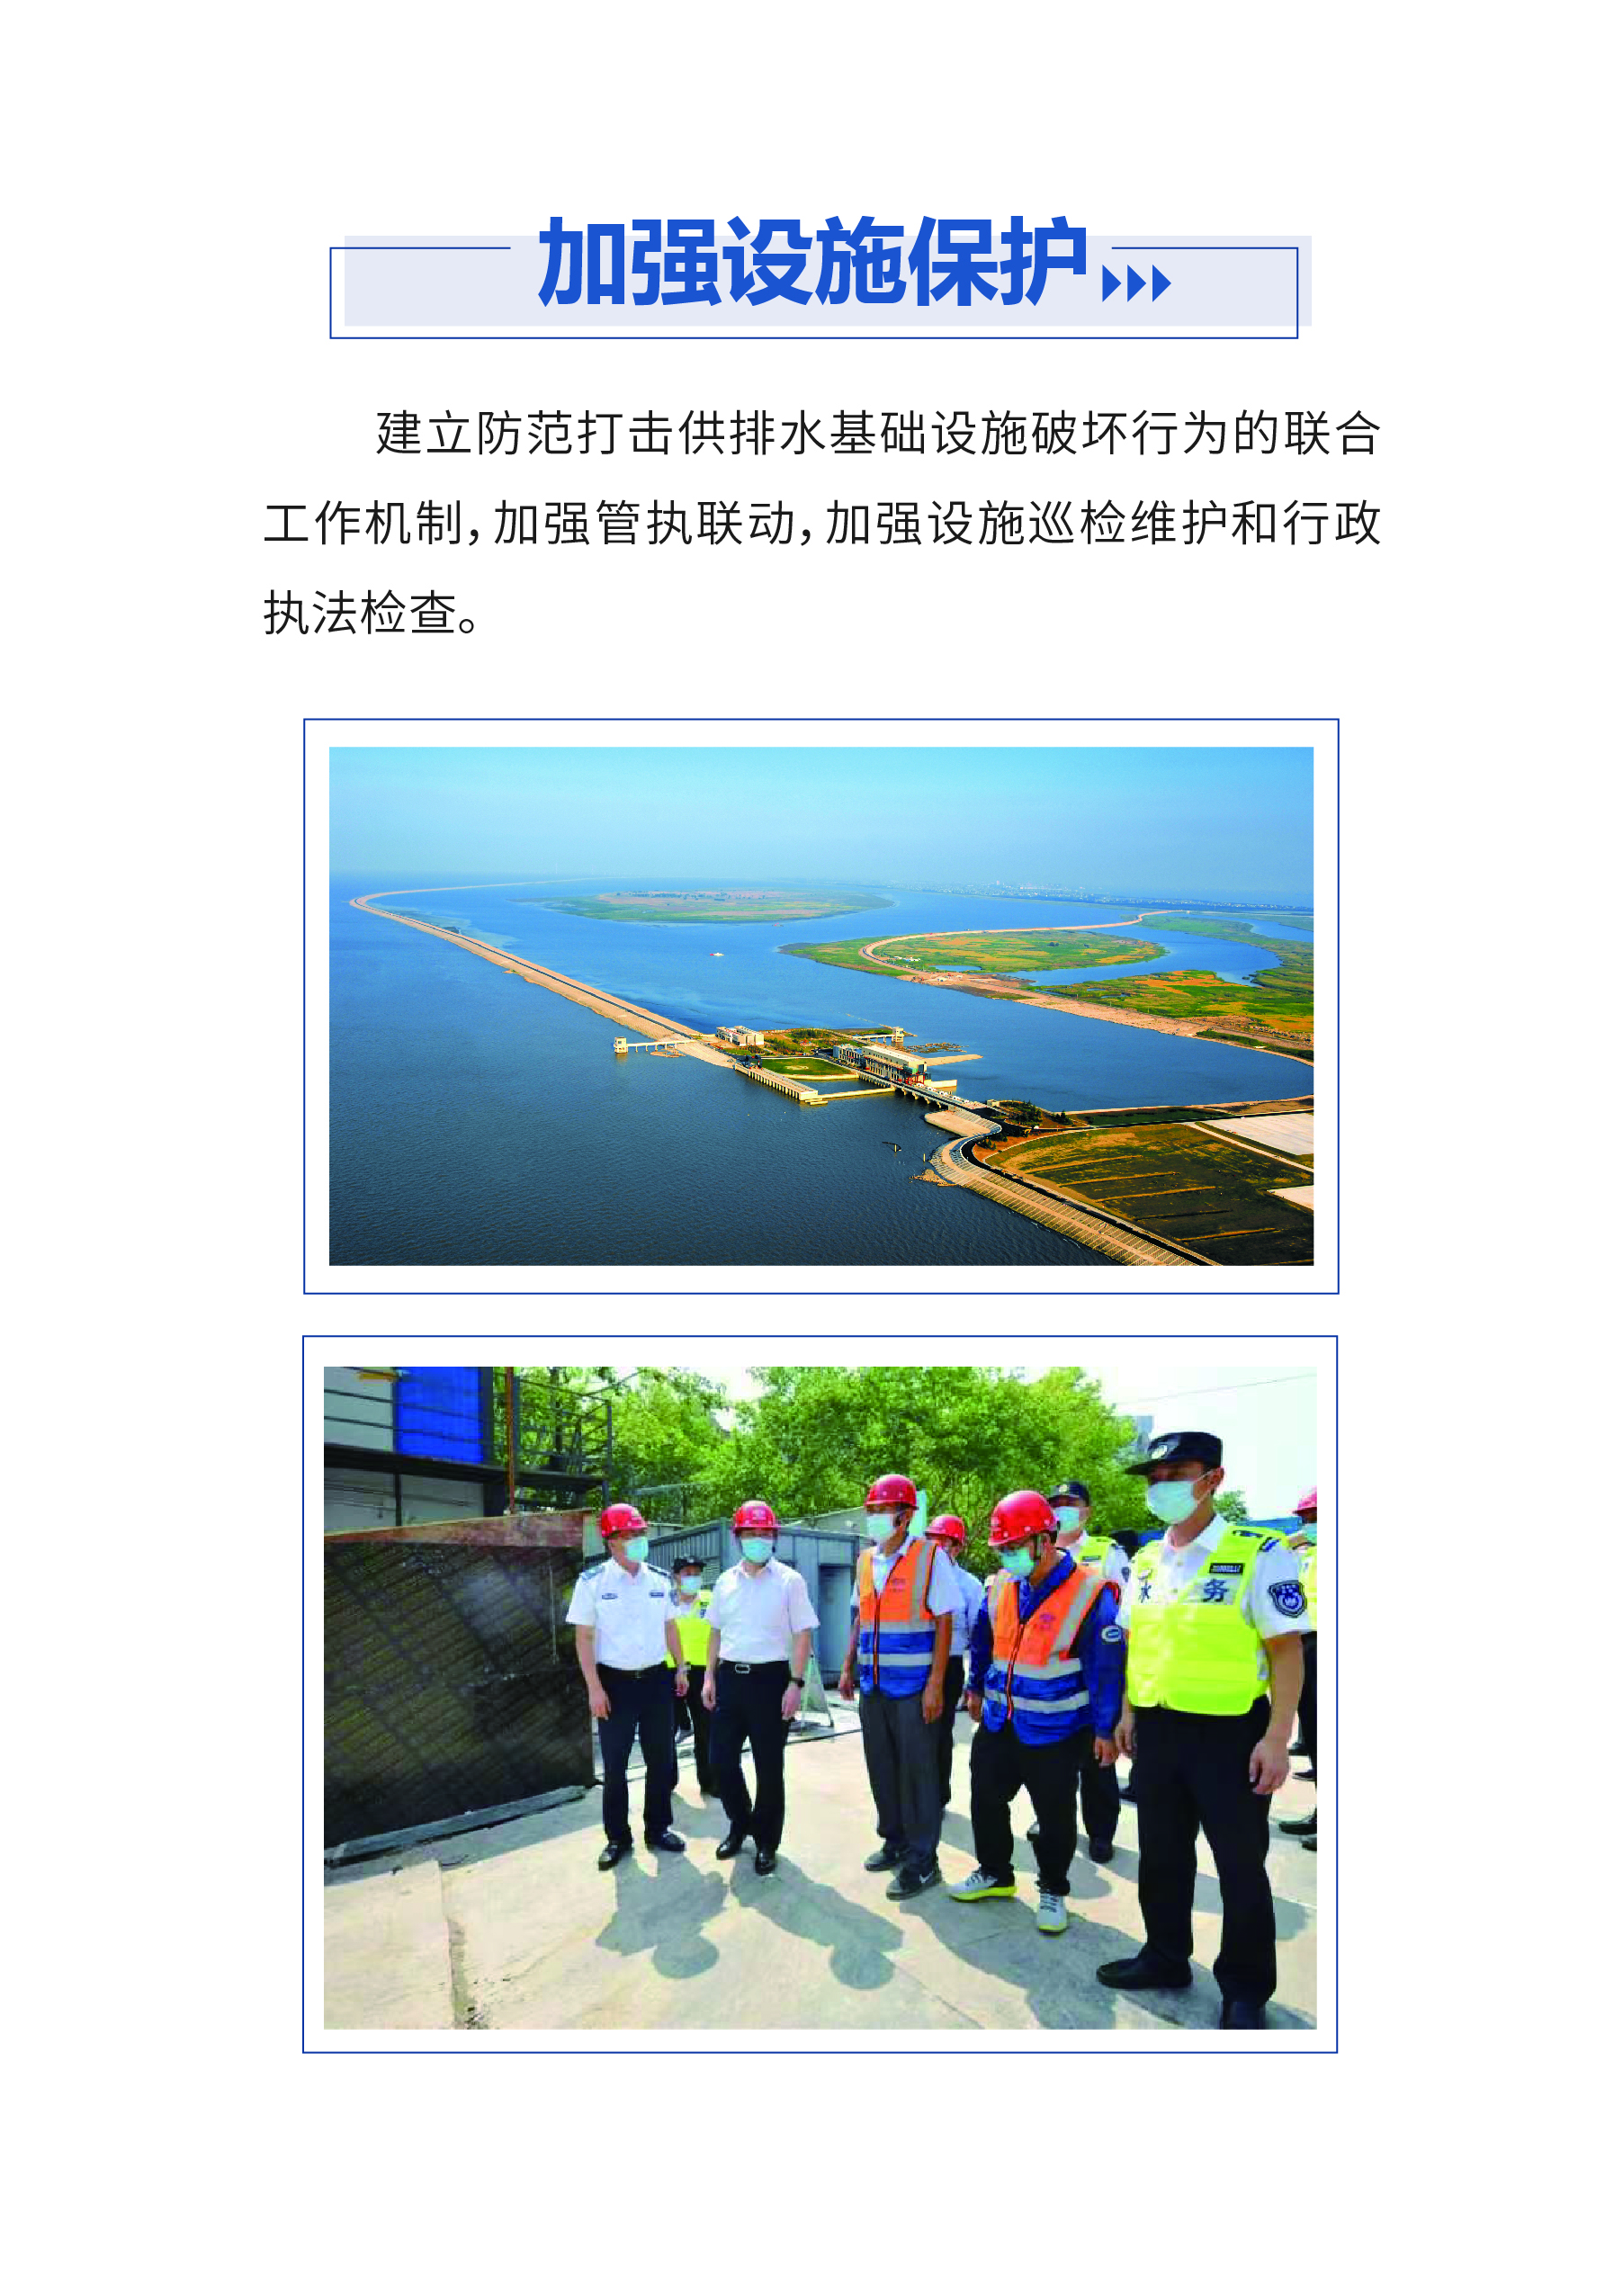 0515-上海供排水接入改革6.0版_页面_05.jpg